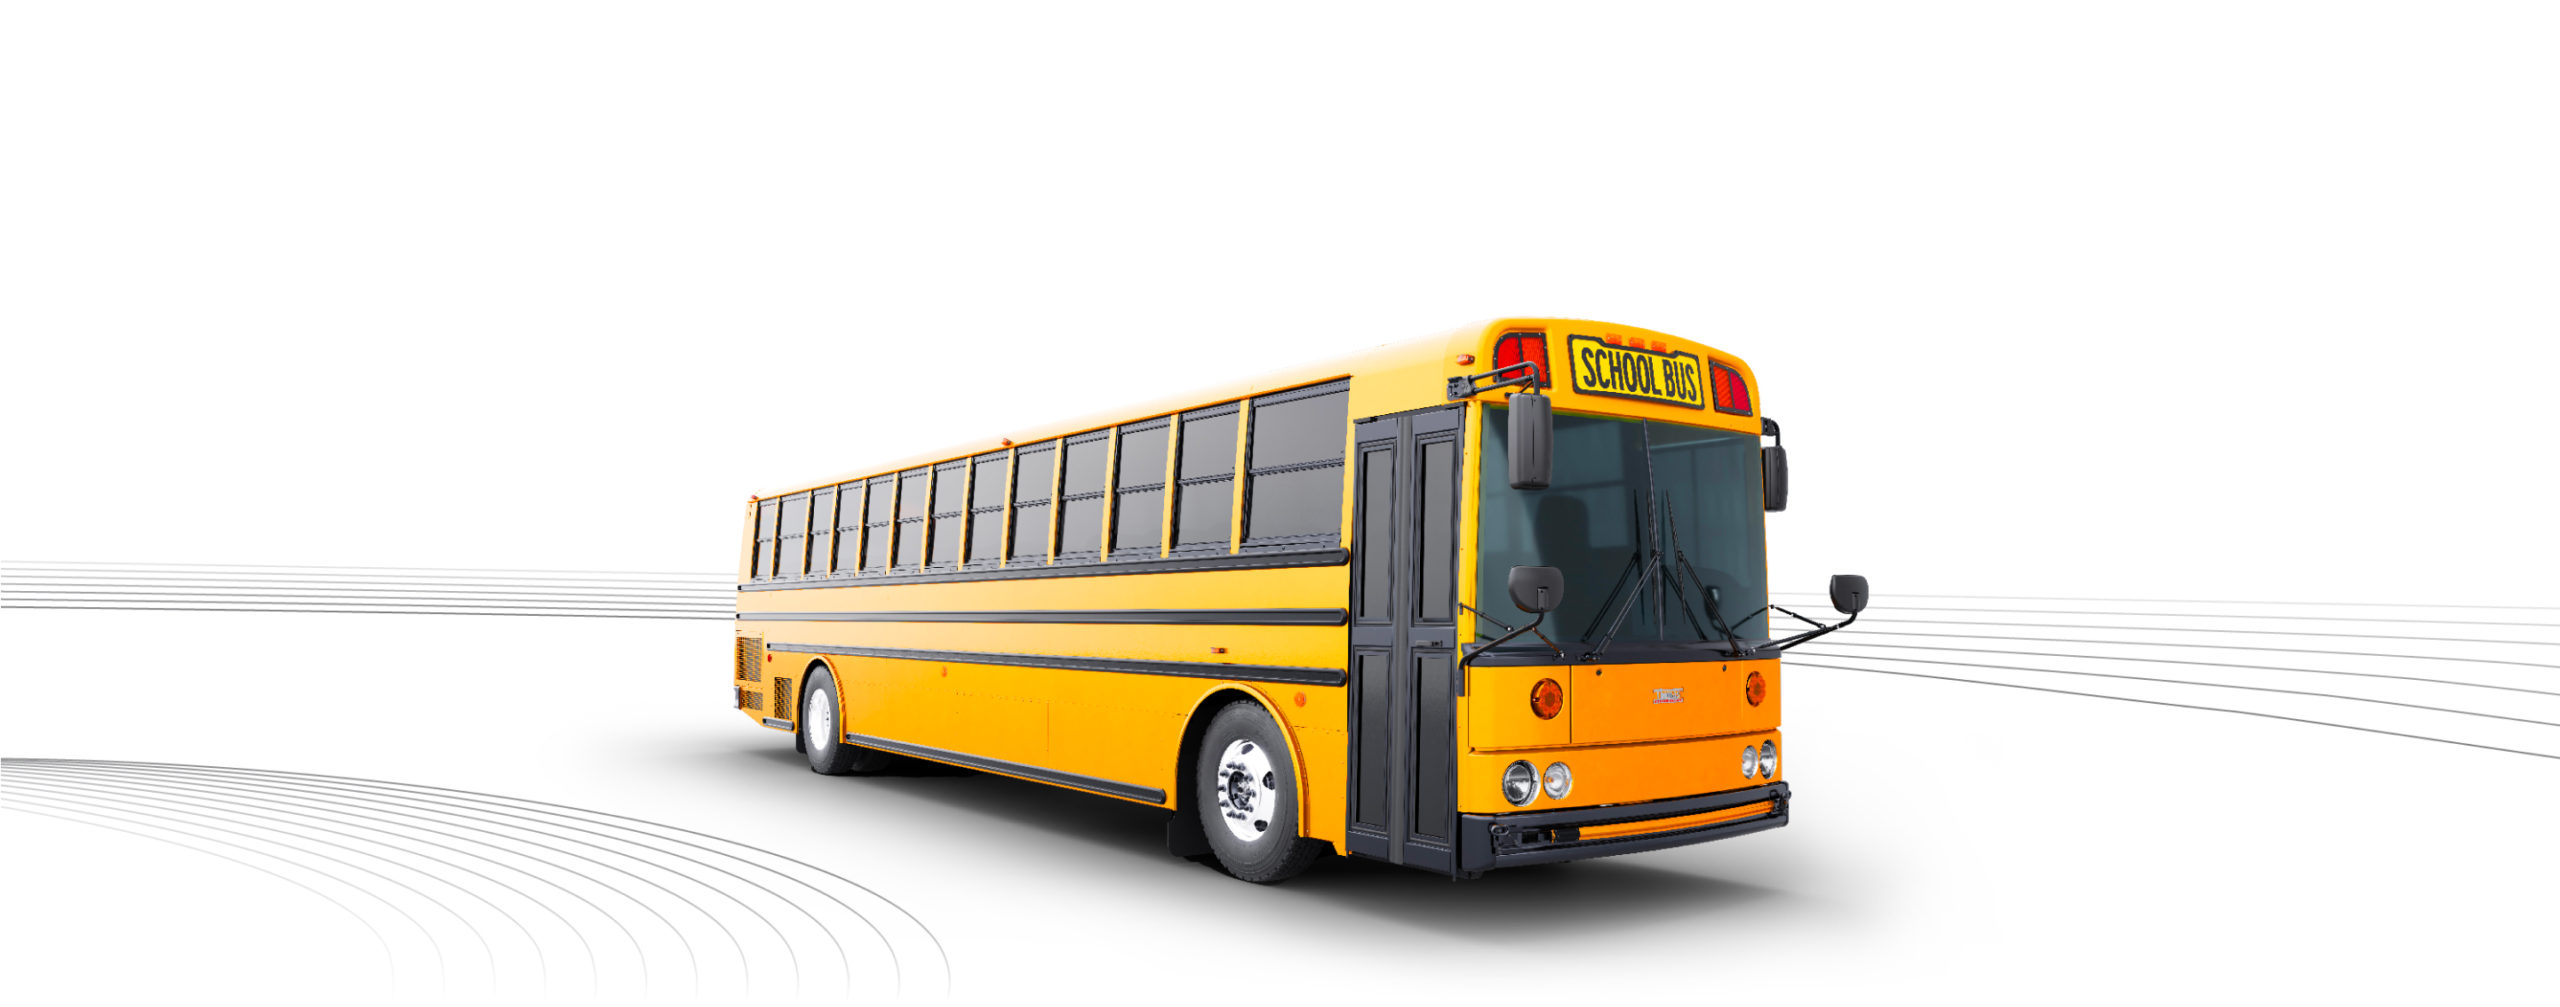 Saf-T-Liner HDX Type D School Bus - Buswest